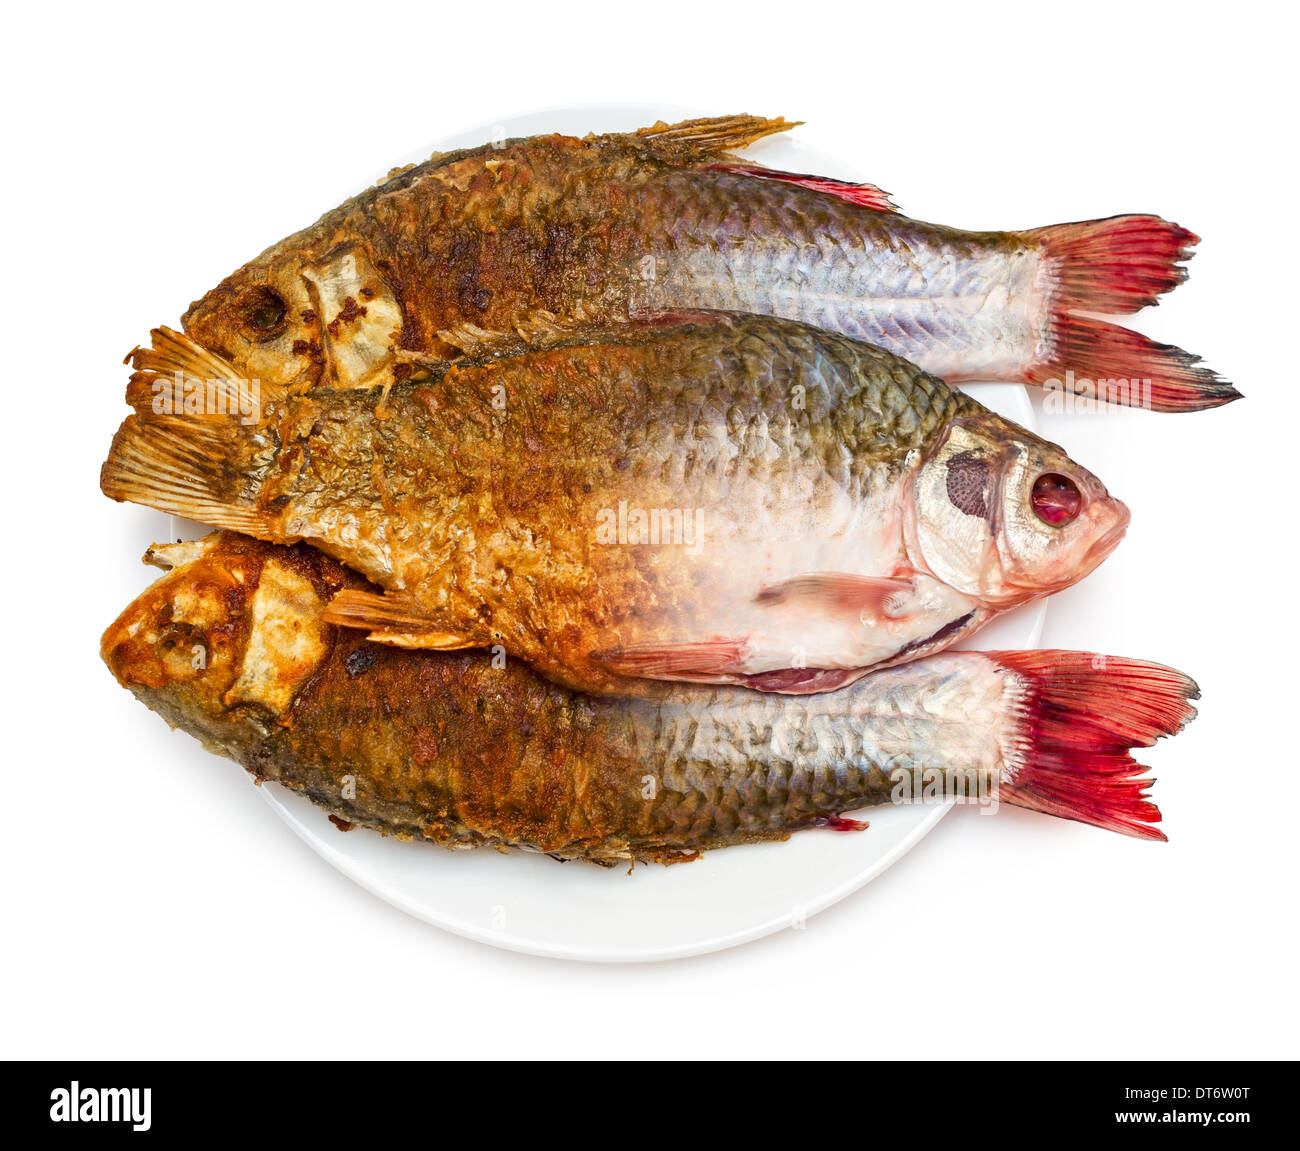 Braten von Fisch. Die Hälfte der Roh- und gebratenen Fisch auf einem Teller, isoliert auf weißem Hintergrund. Stockfoto